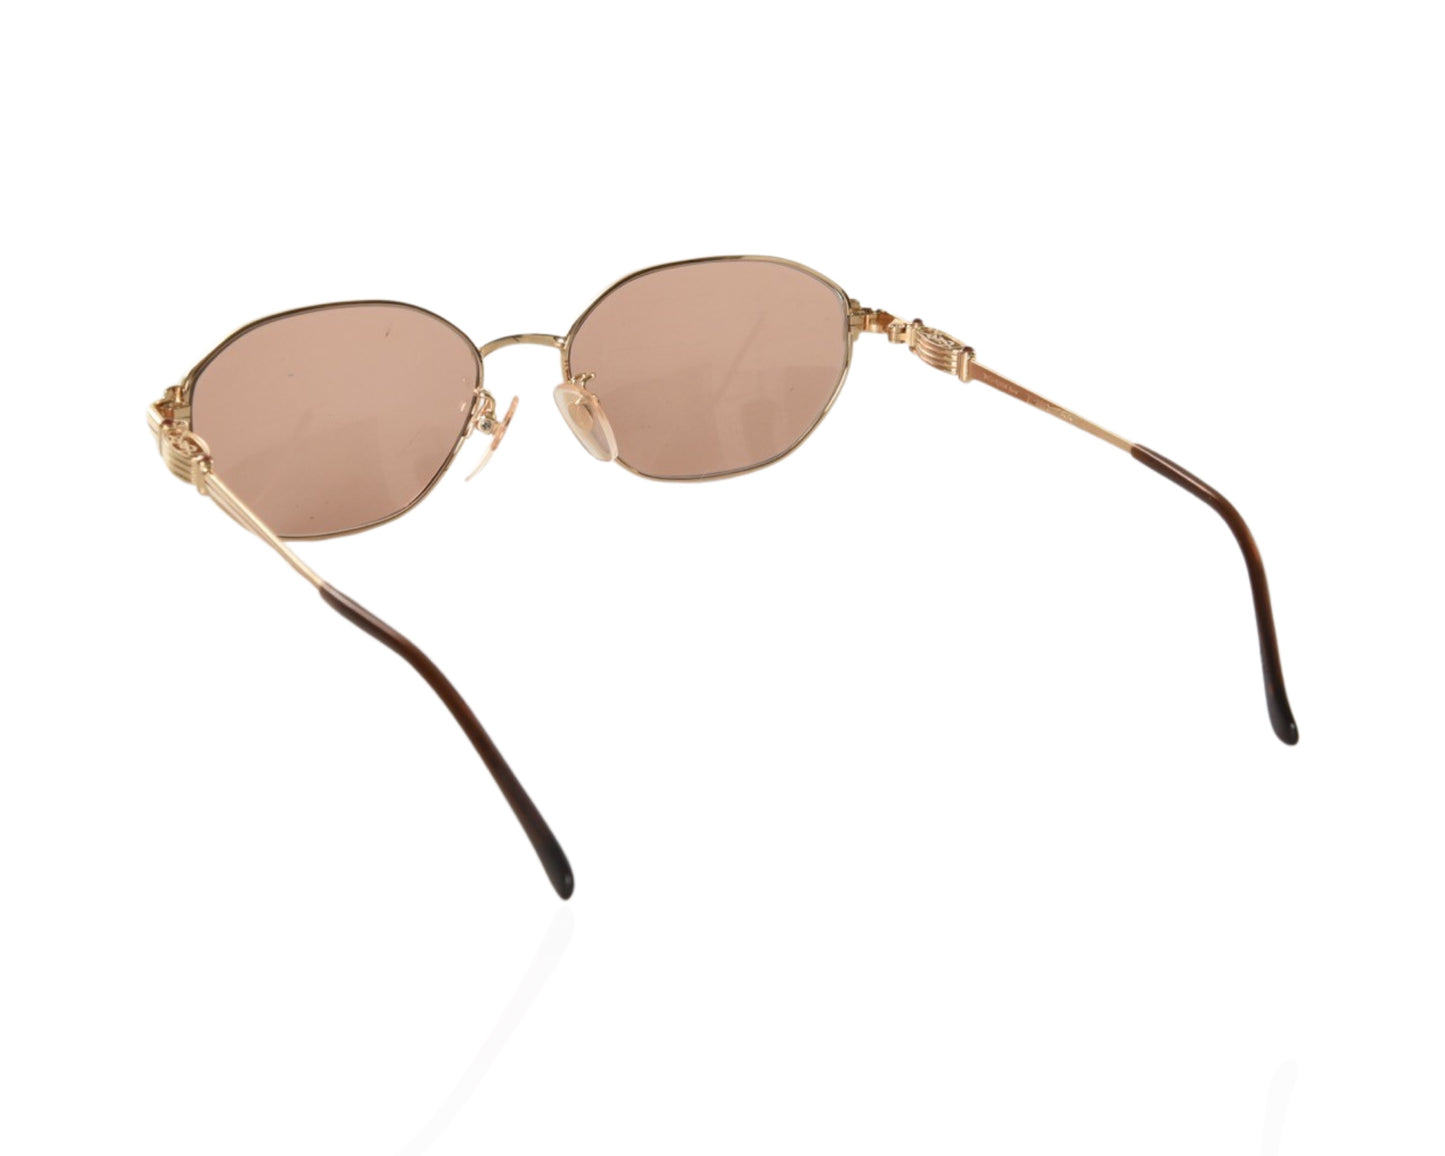 Yves Saint Laurent YSL Sunglasses Glasses Logo Women's Gold Brown